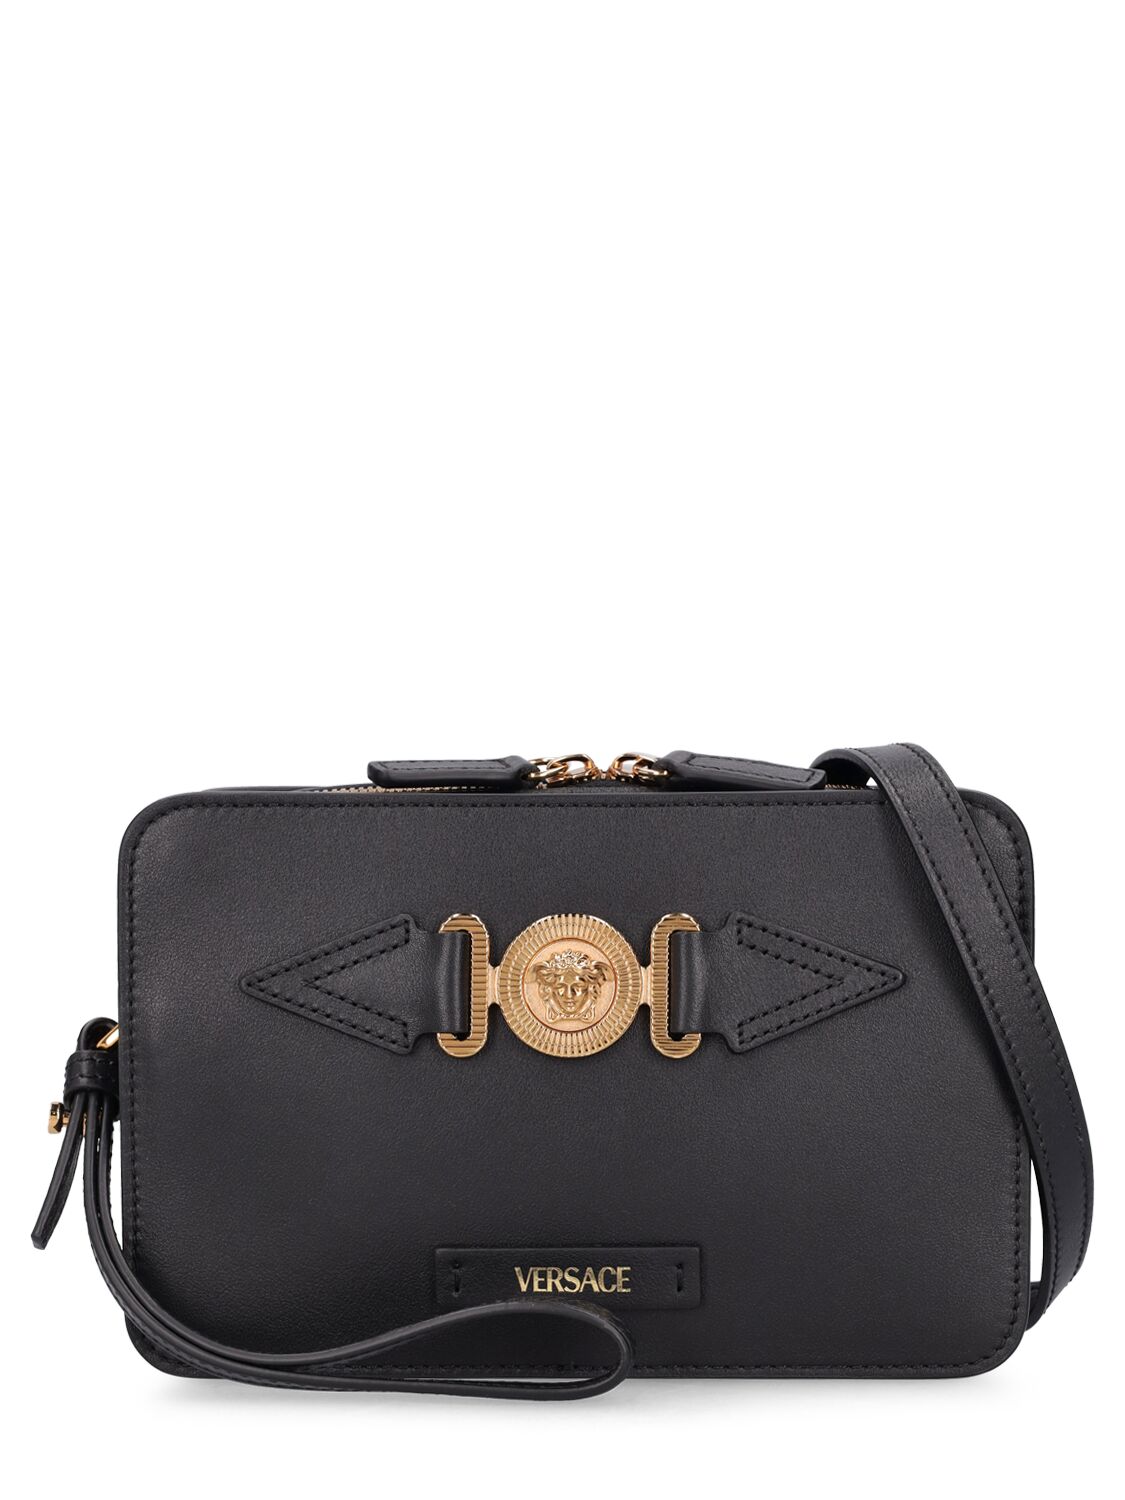 Versace Medusa Leather Camera Bag In Black